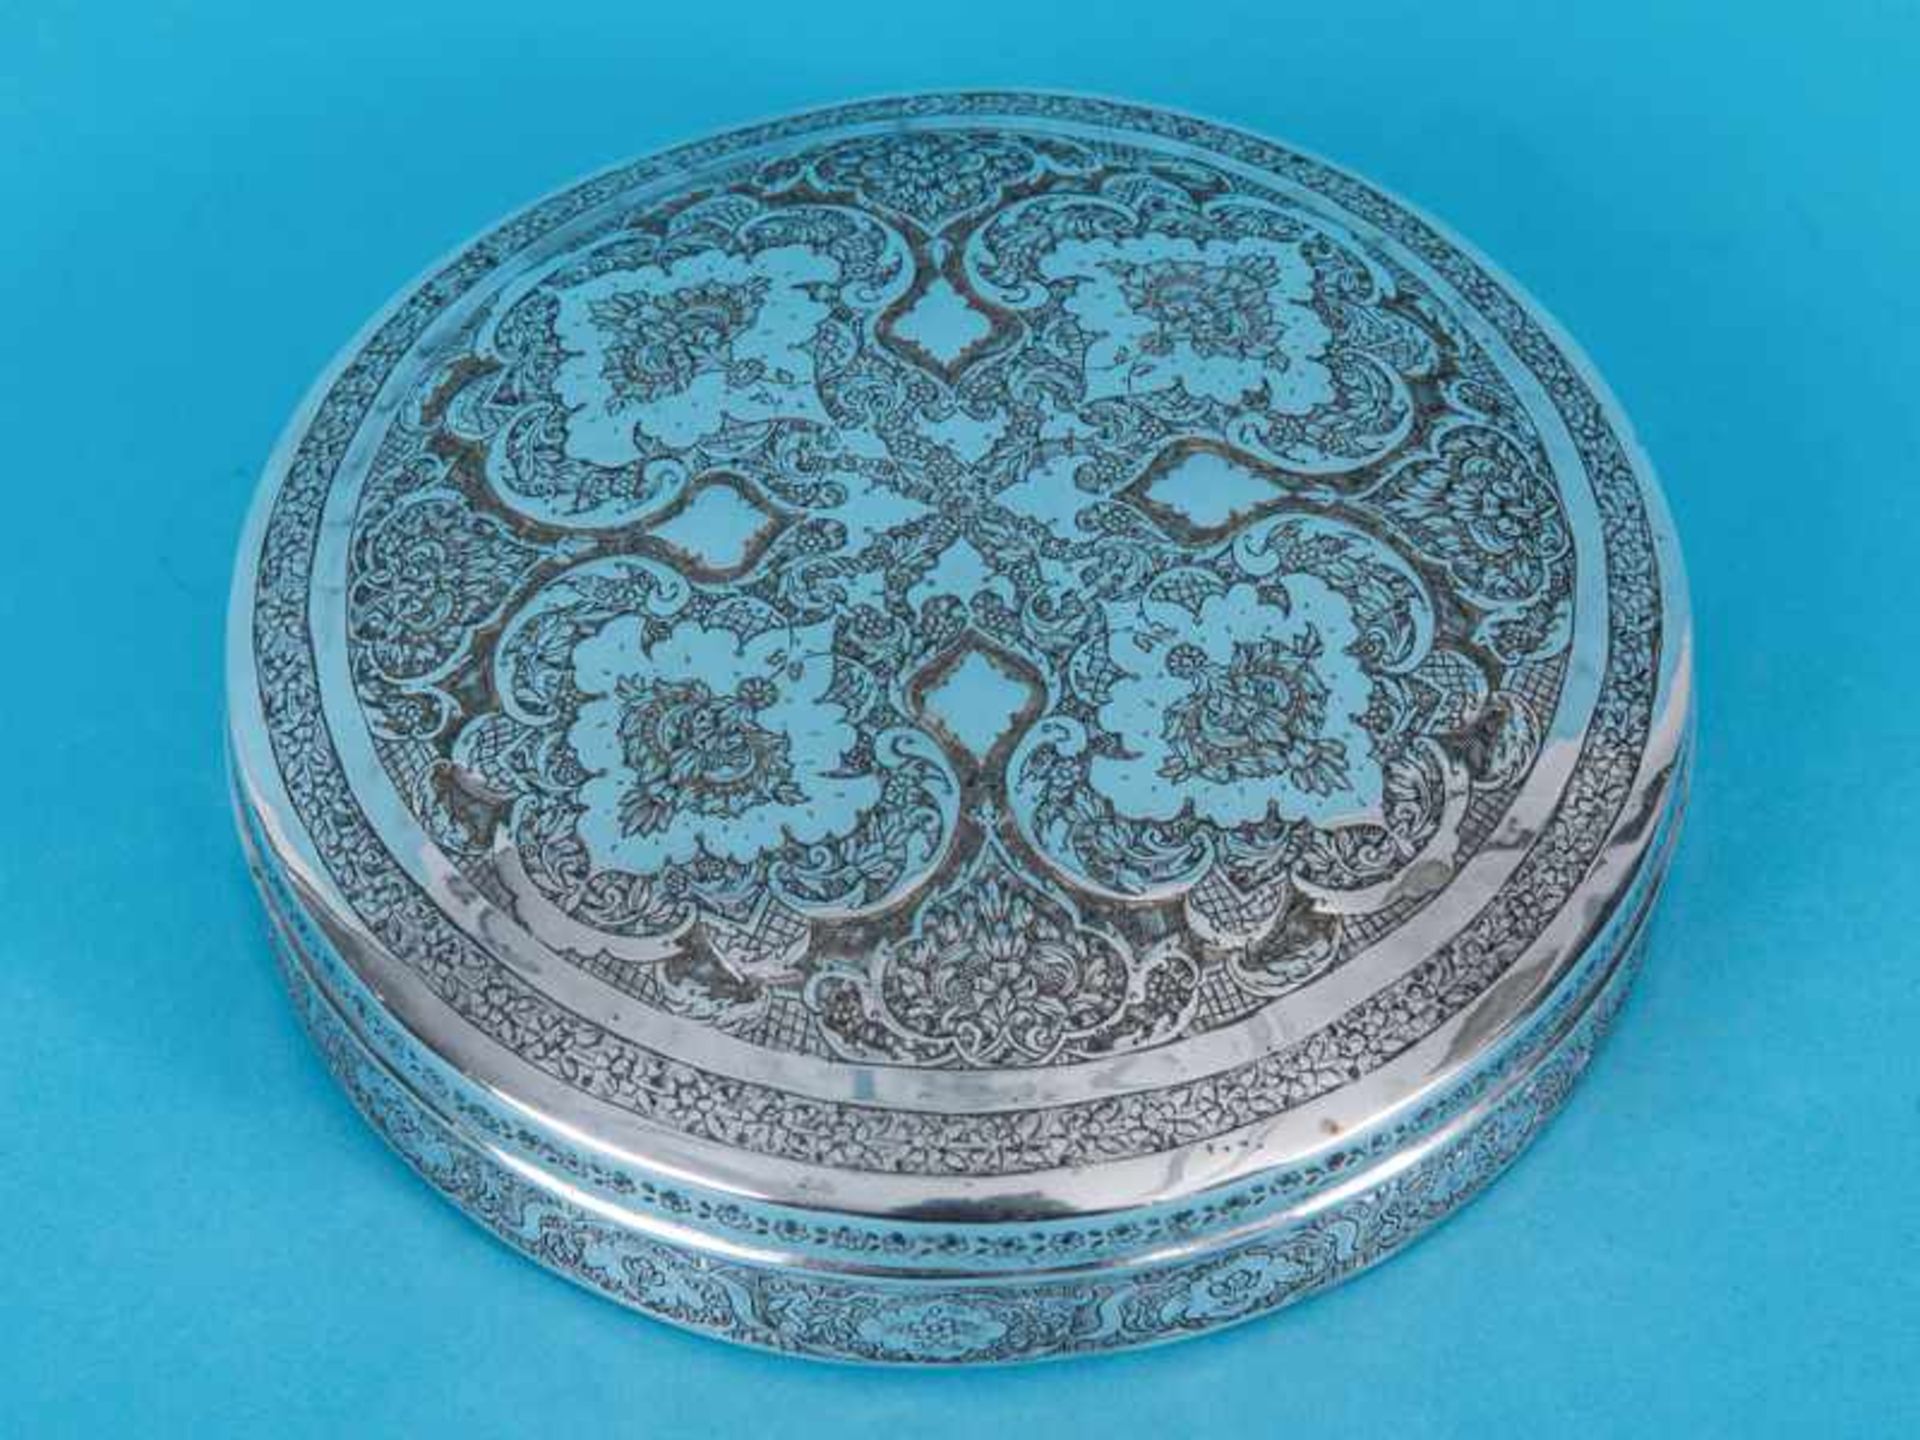 Deckeldose mit reichem Maureskendekor, Persien, Ende 19. Jh./ um 1900. Silber, ca. 428 g; flache